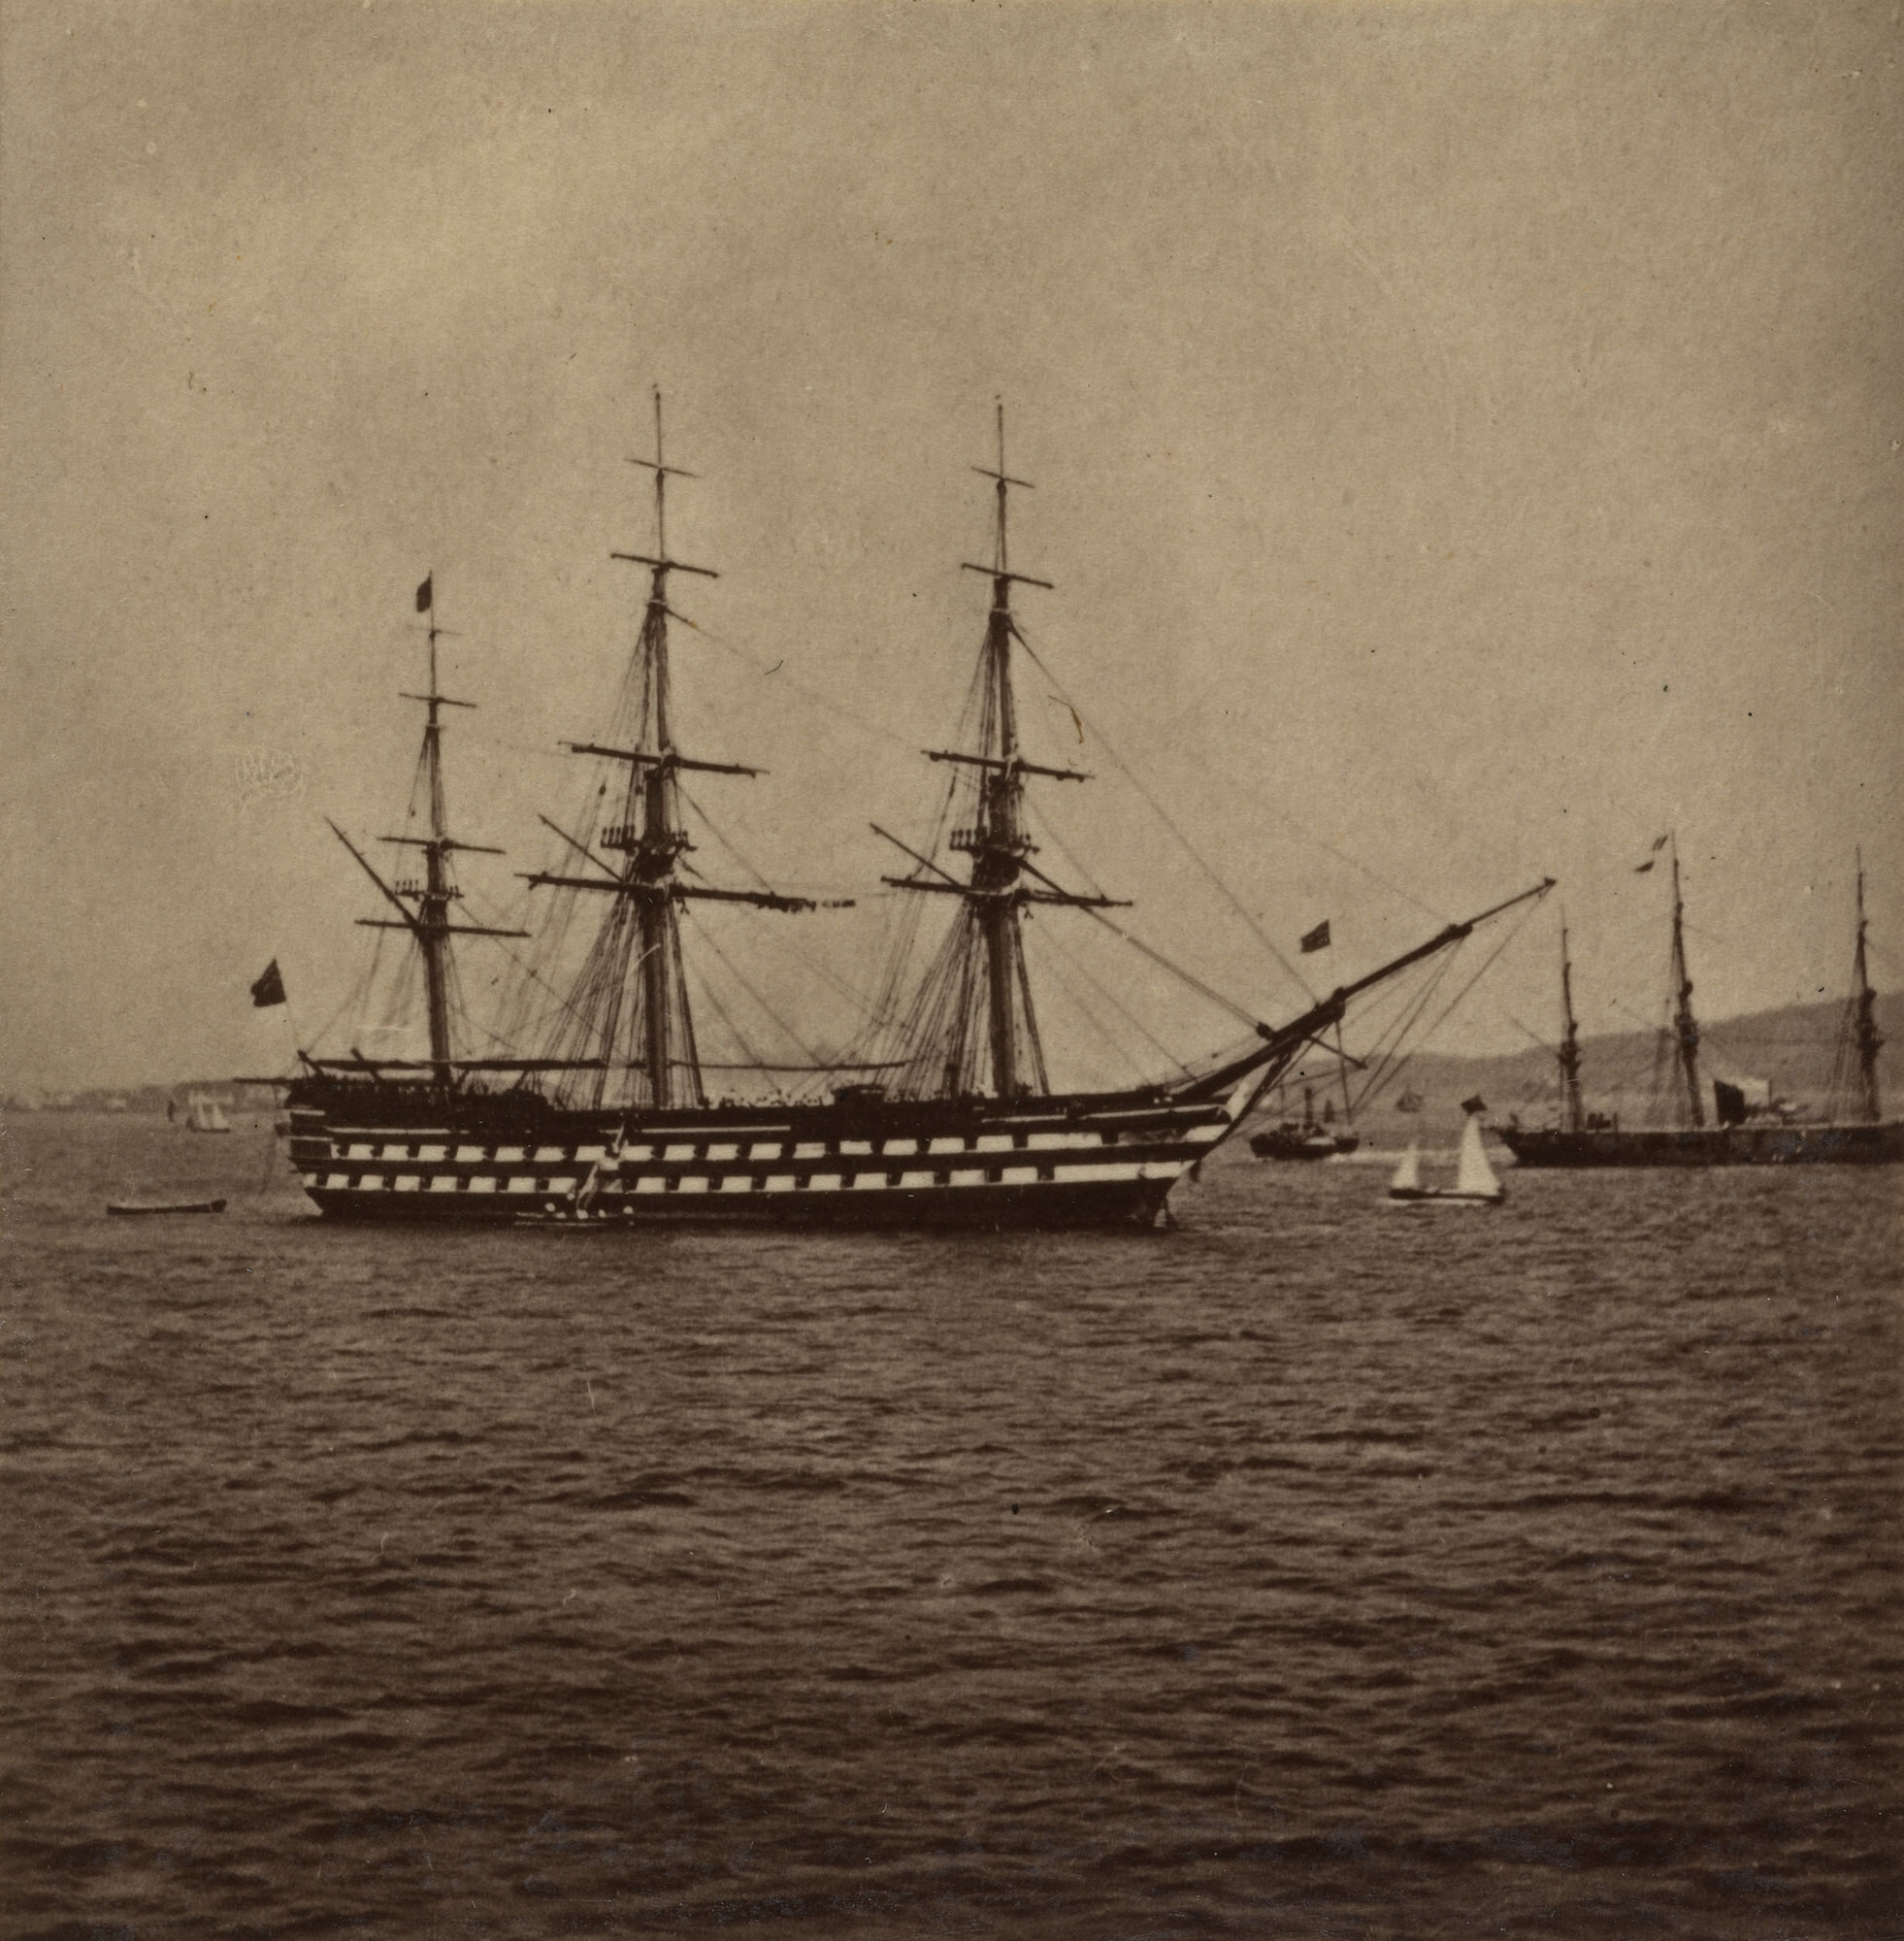 Корабль королевского флота HMS Edgar в заливе Ферт-оф-Форт у берегов Шотландии, ок. 1860. Фотограф Джордж Вашингтон Уилсон